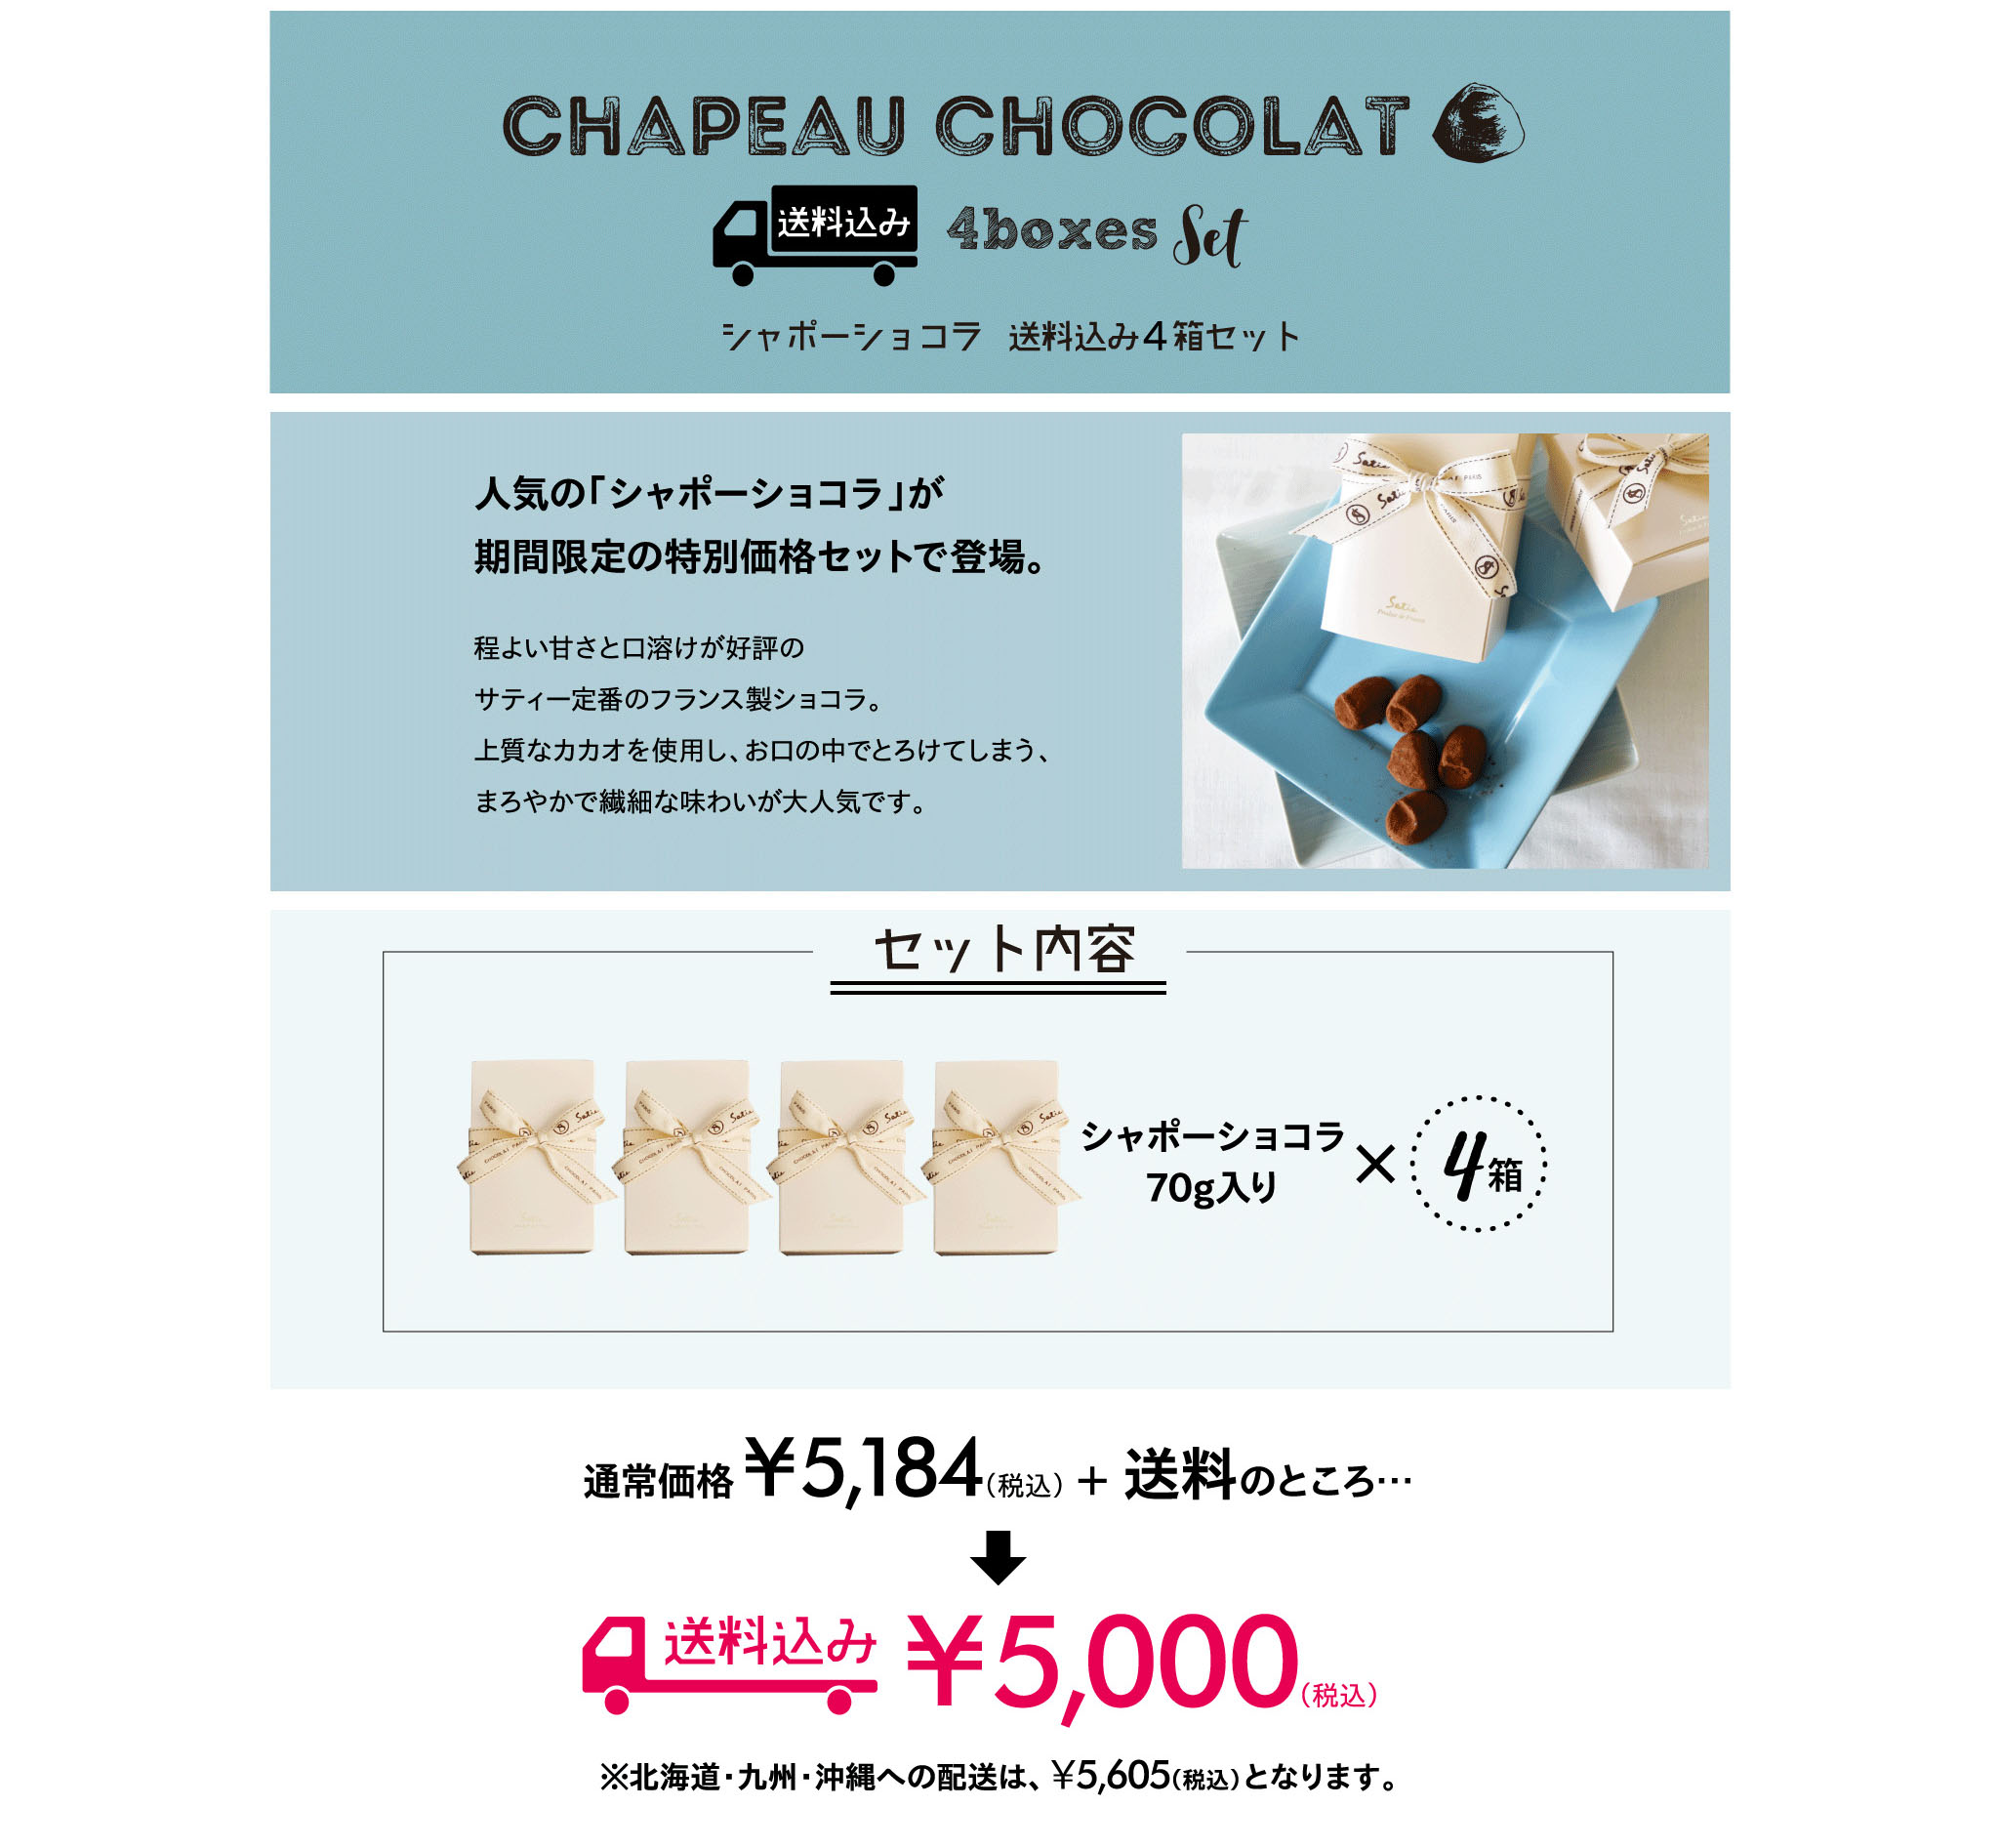 Chapeau Chocolat / シャポーショコラ税込み4箱セット